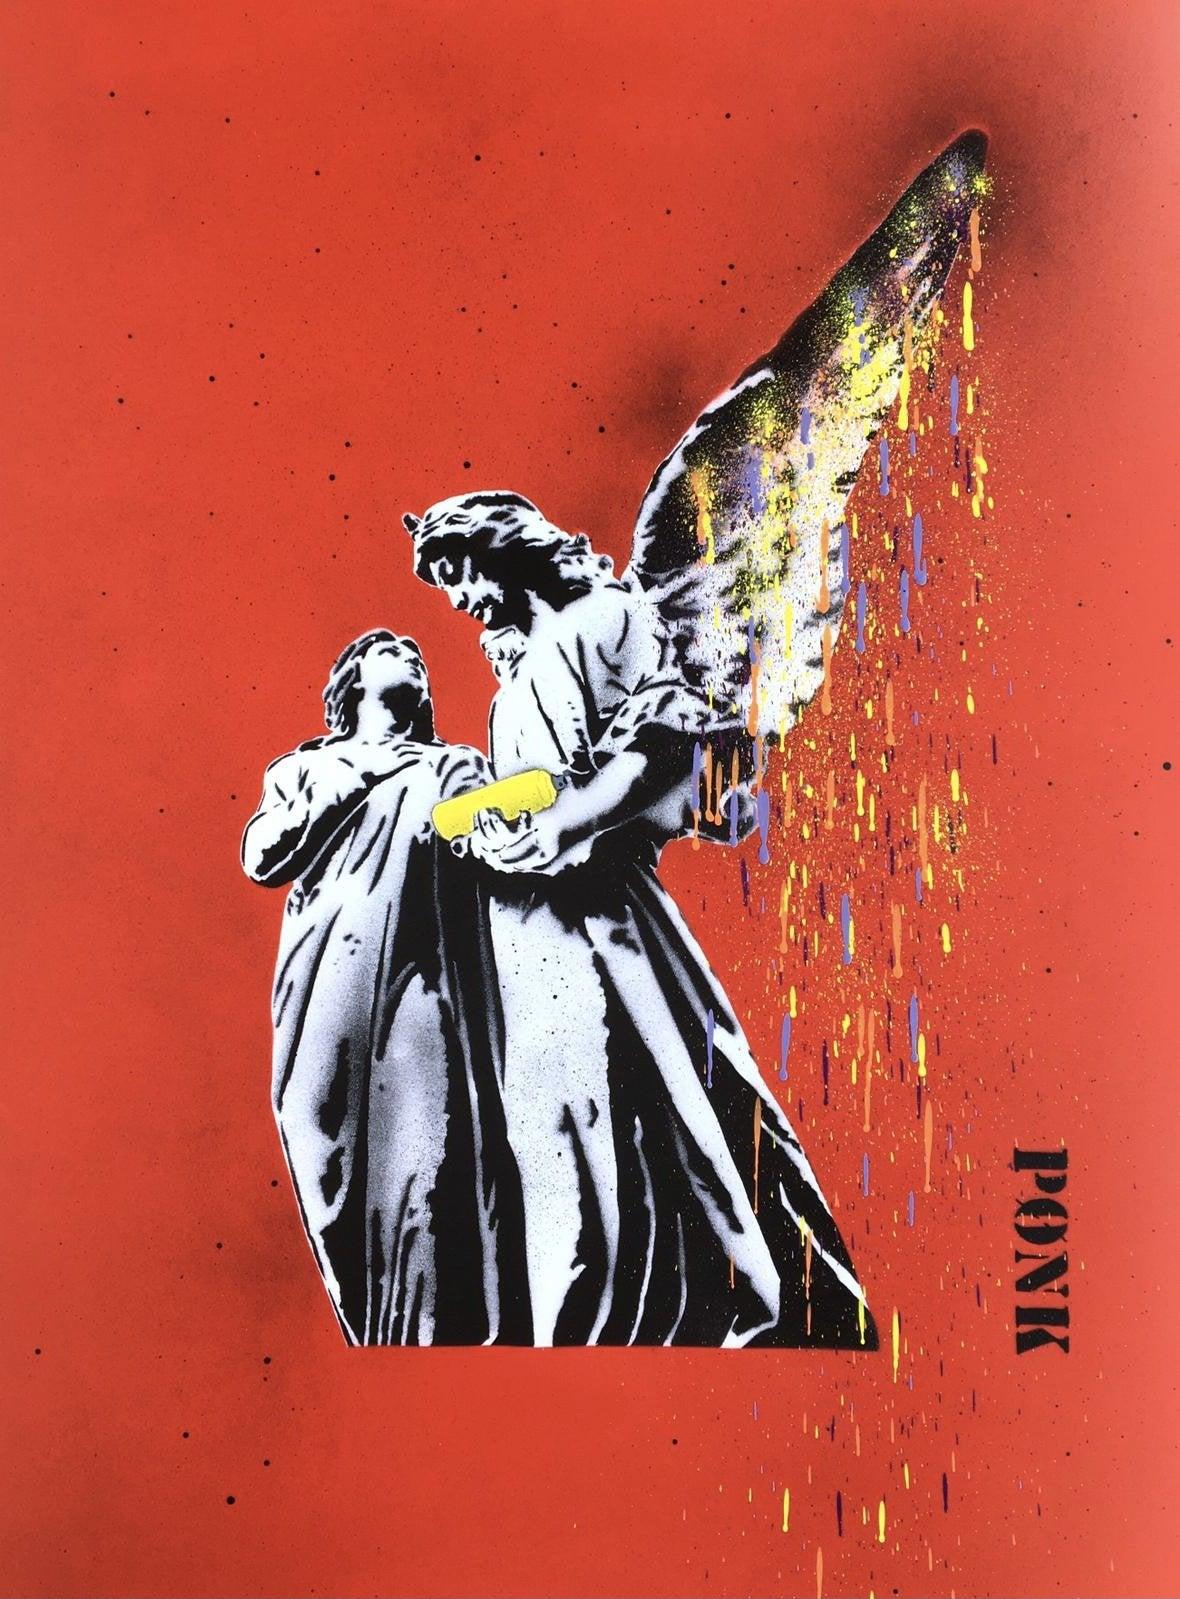 Spray for Love – 1/1 (Rot) von PONK (Street Art), 2021 – Print von PØNK